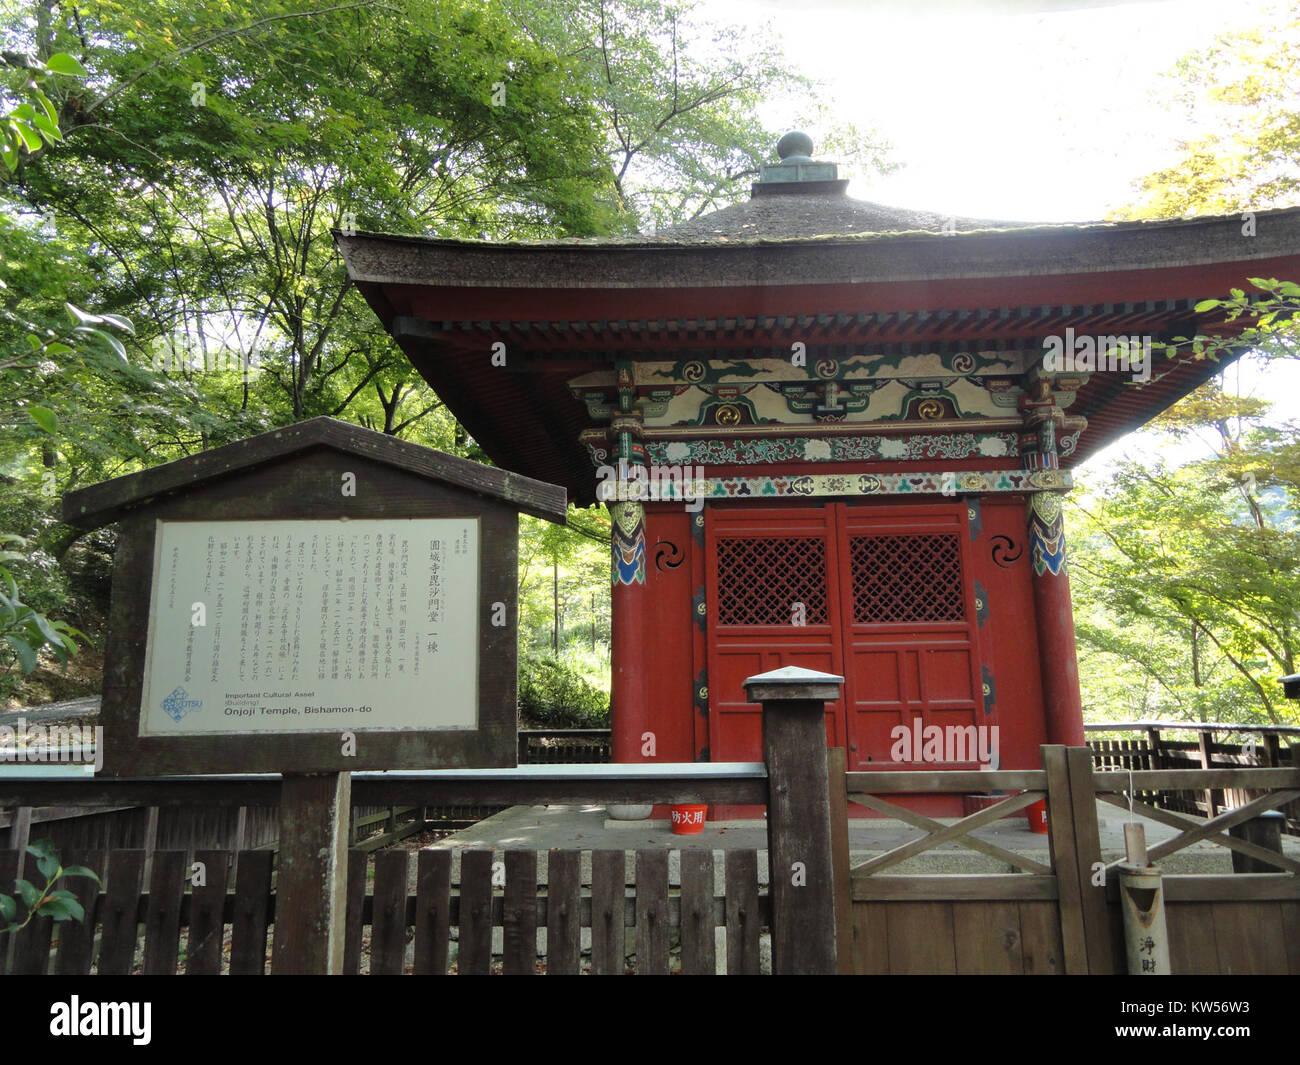 Bishamon do   Mii dera   Otsu, Shiga   DSC07118 Stock Photo